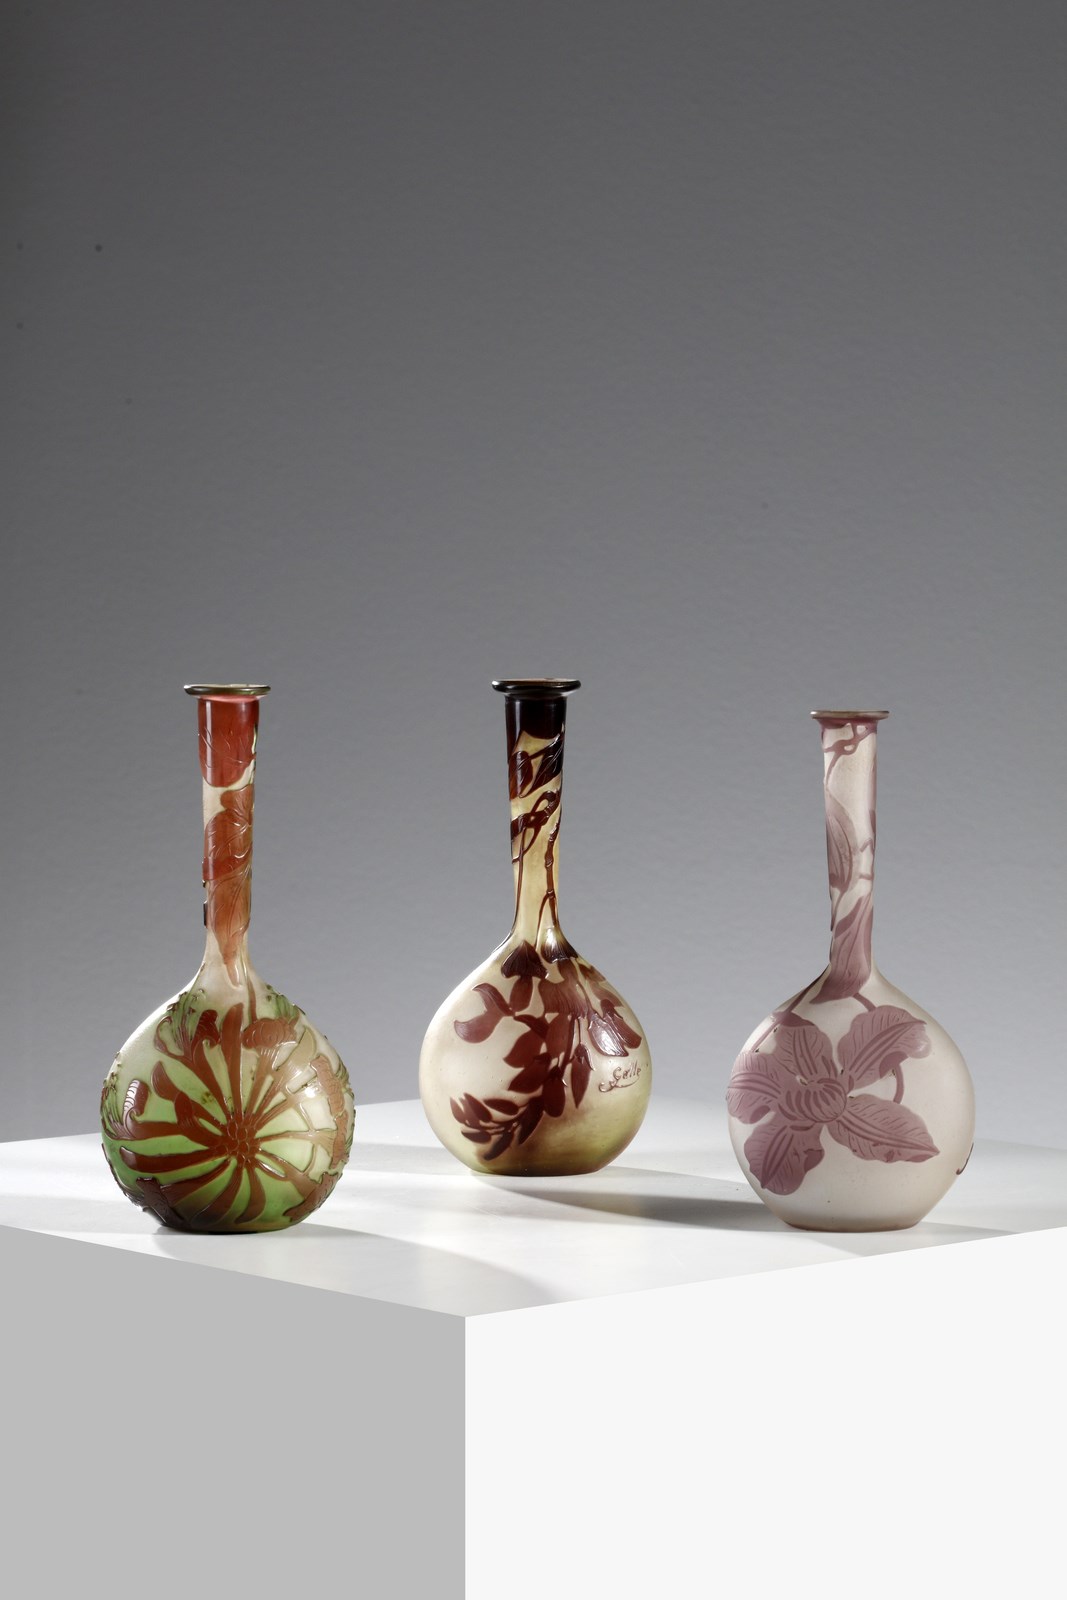 Gruppo di tre vasetti soliflore con base a bulbo in vetro doppio, decoro floreale inciso finemente ad acido ( Gallé)